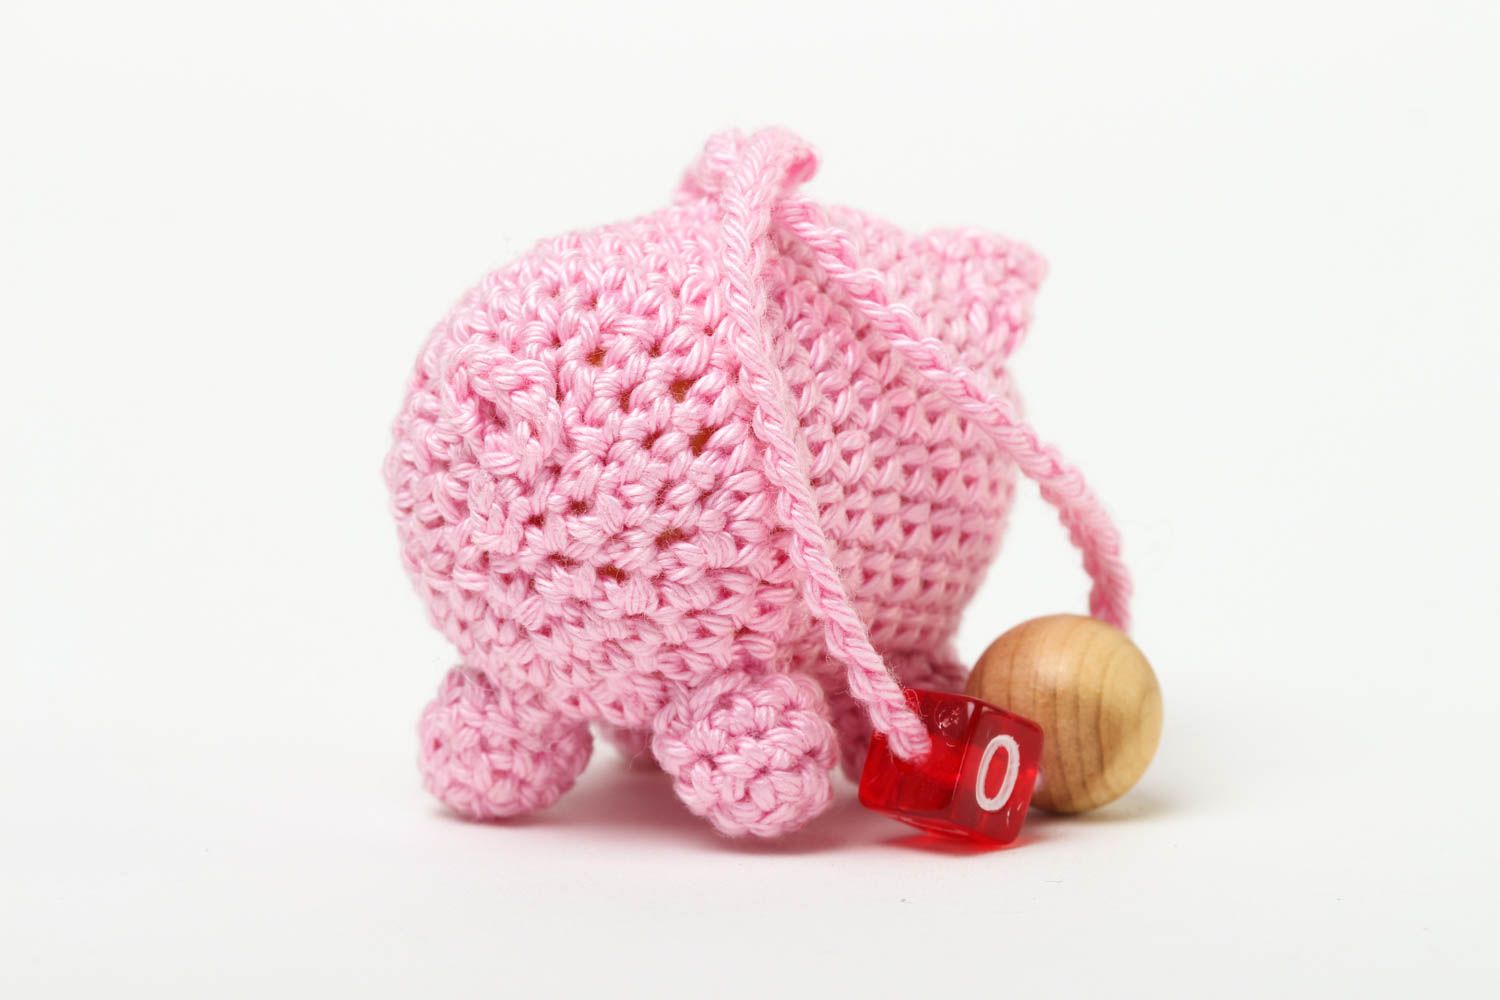 Rattle toy for babies handmade crocheted soft toys nursery decor ideas photo 3